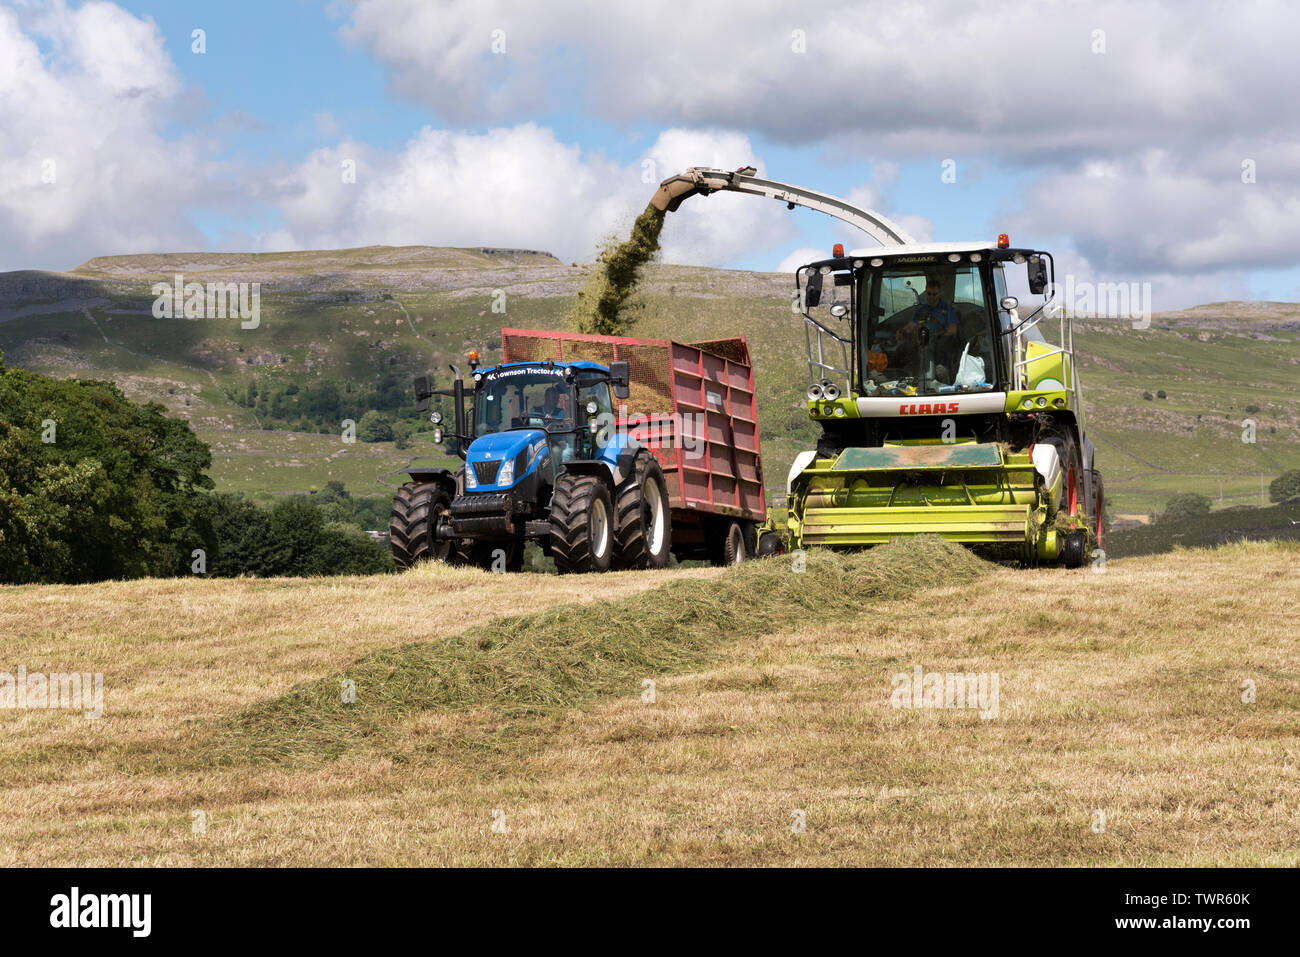 Gli agricoltori di approfittare di un giorno di estate secca meteo per tagliare il fieno dei prati e raccogliere l'erba per insilati, Austwick, North Yorkshire. Foto Stock